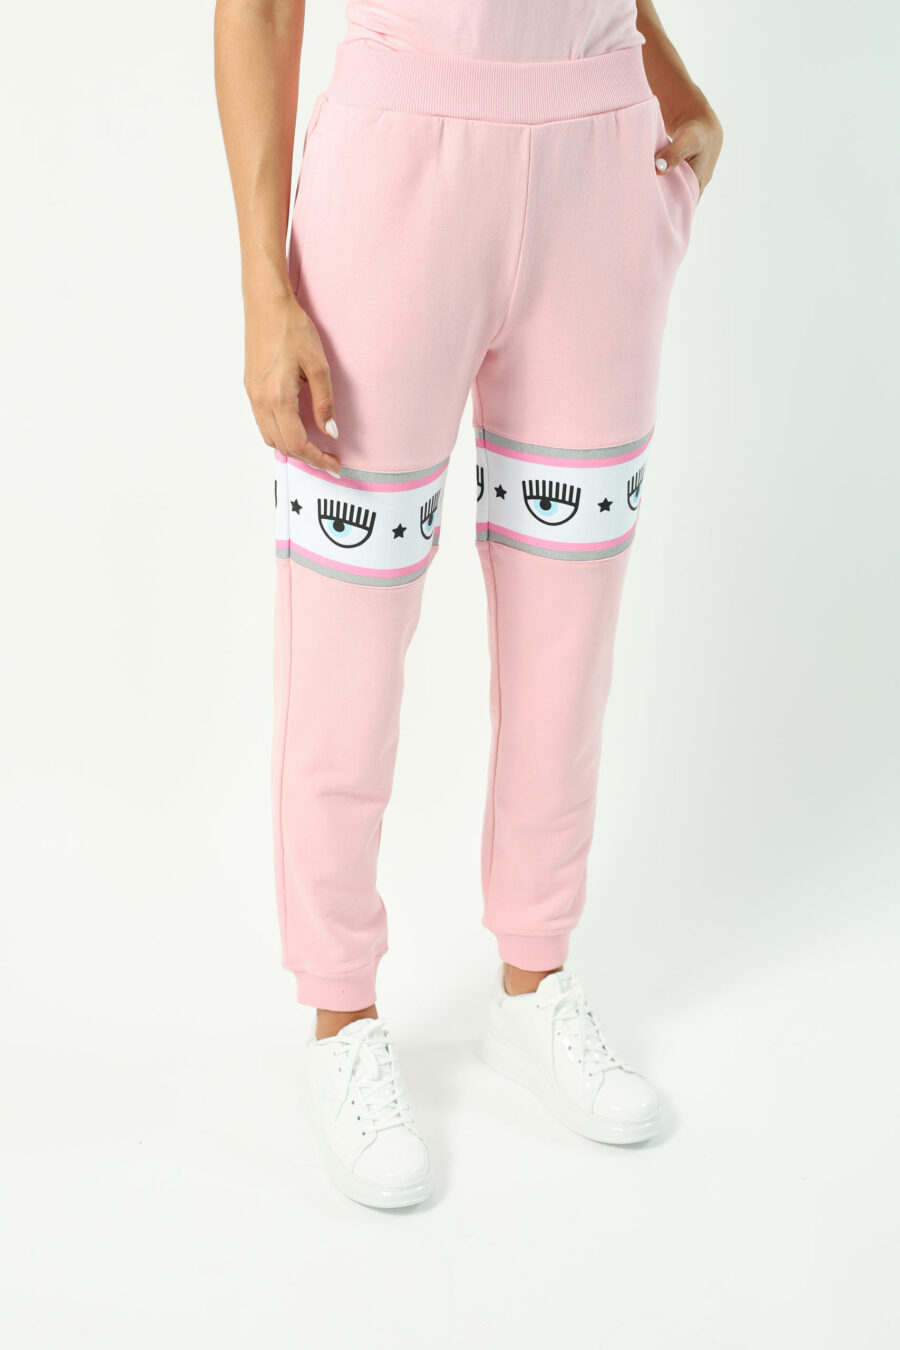 Pantalón de chándal rosa con capucha y logo en cinta blanco y plateado” - Photos 2724